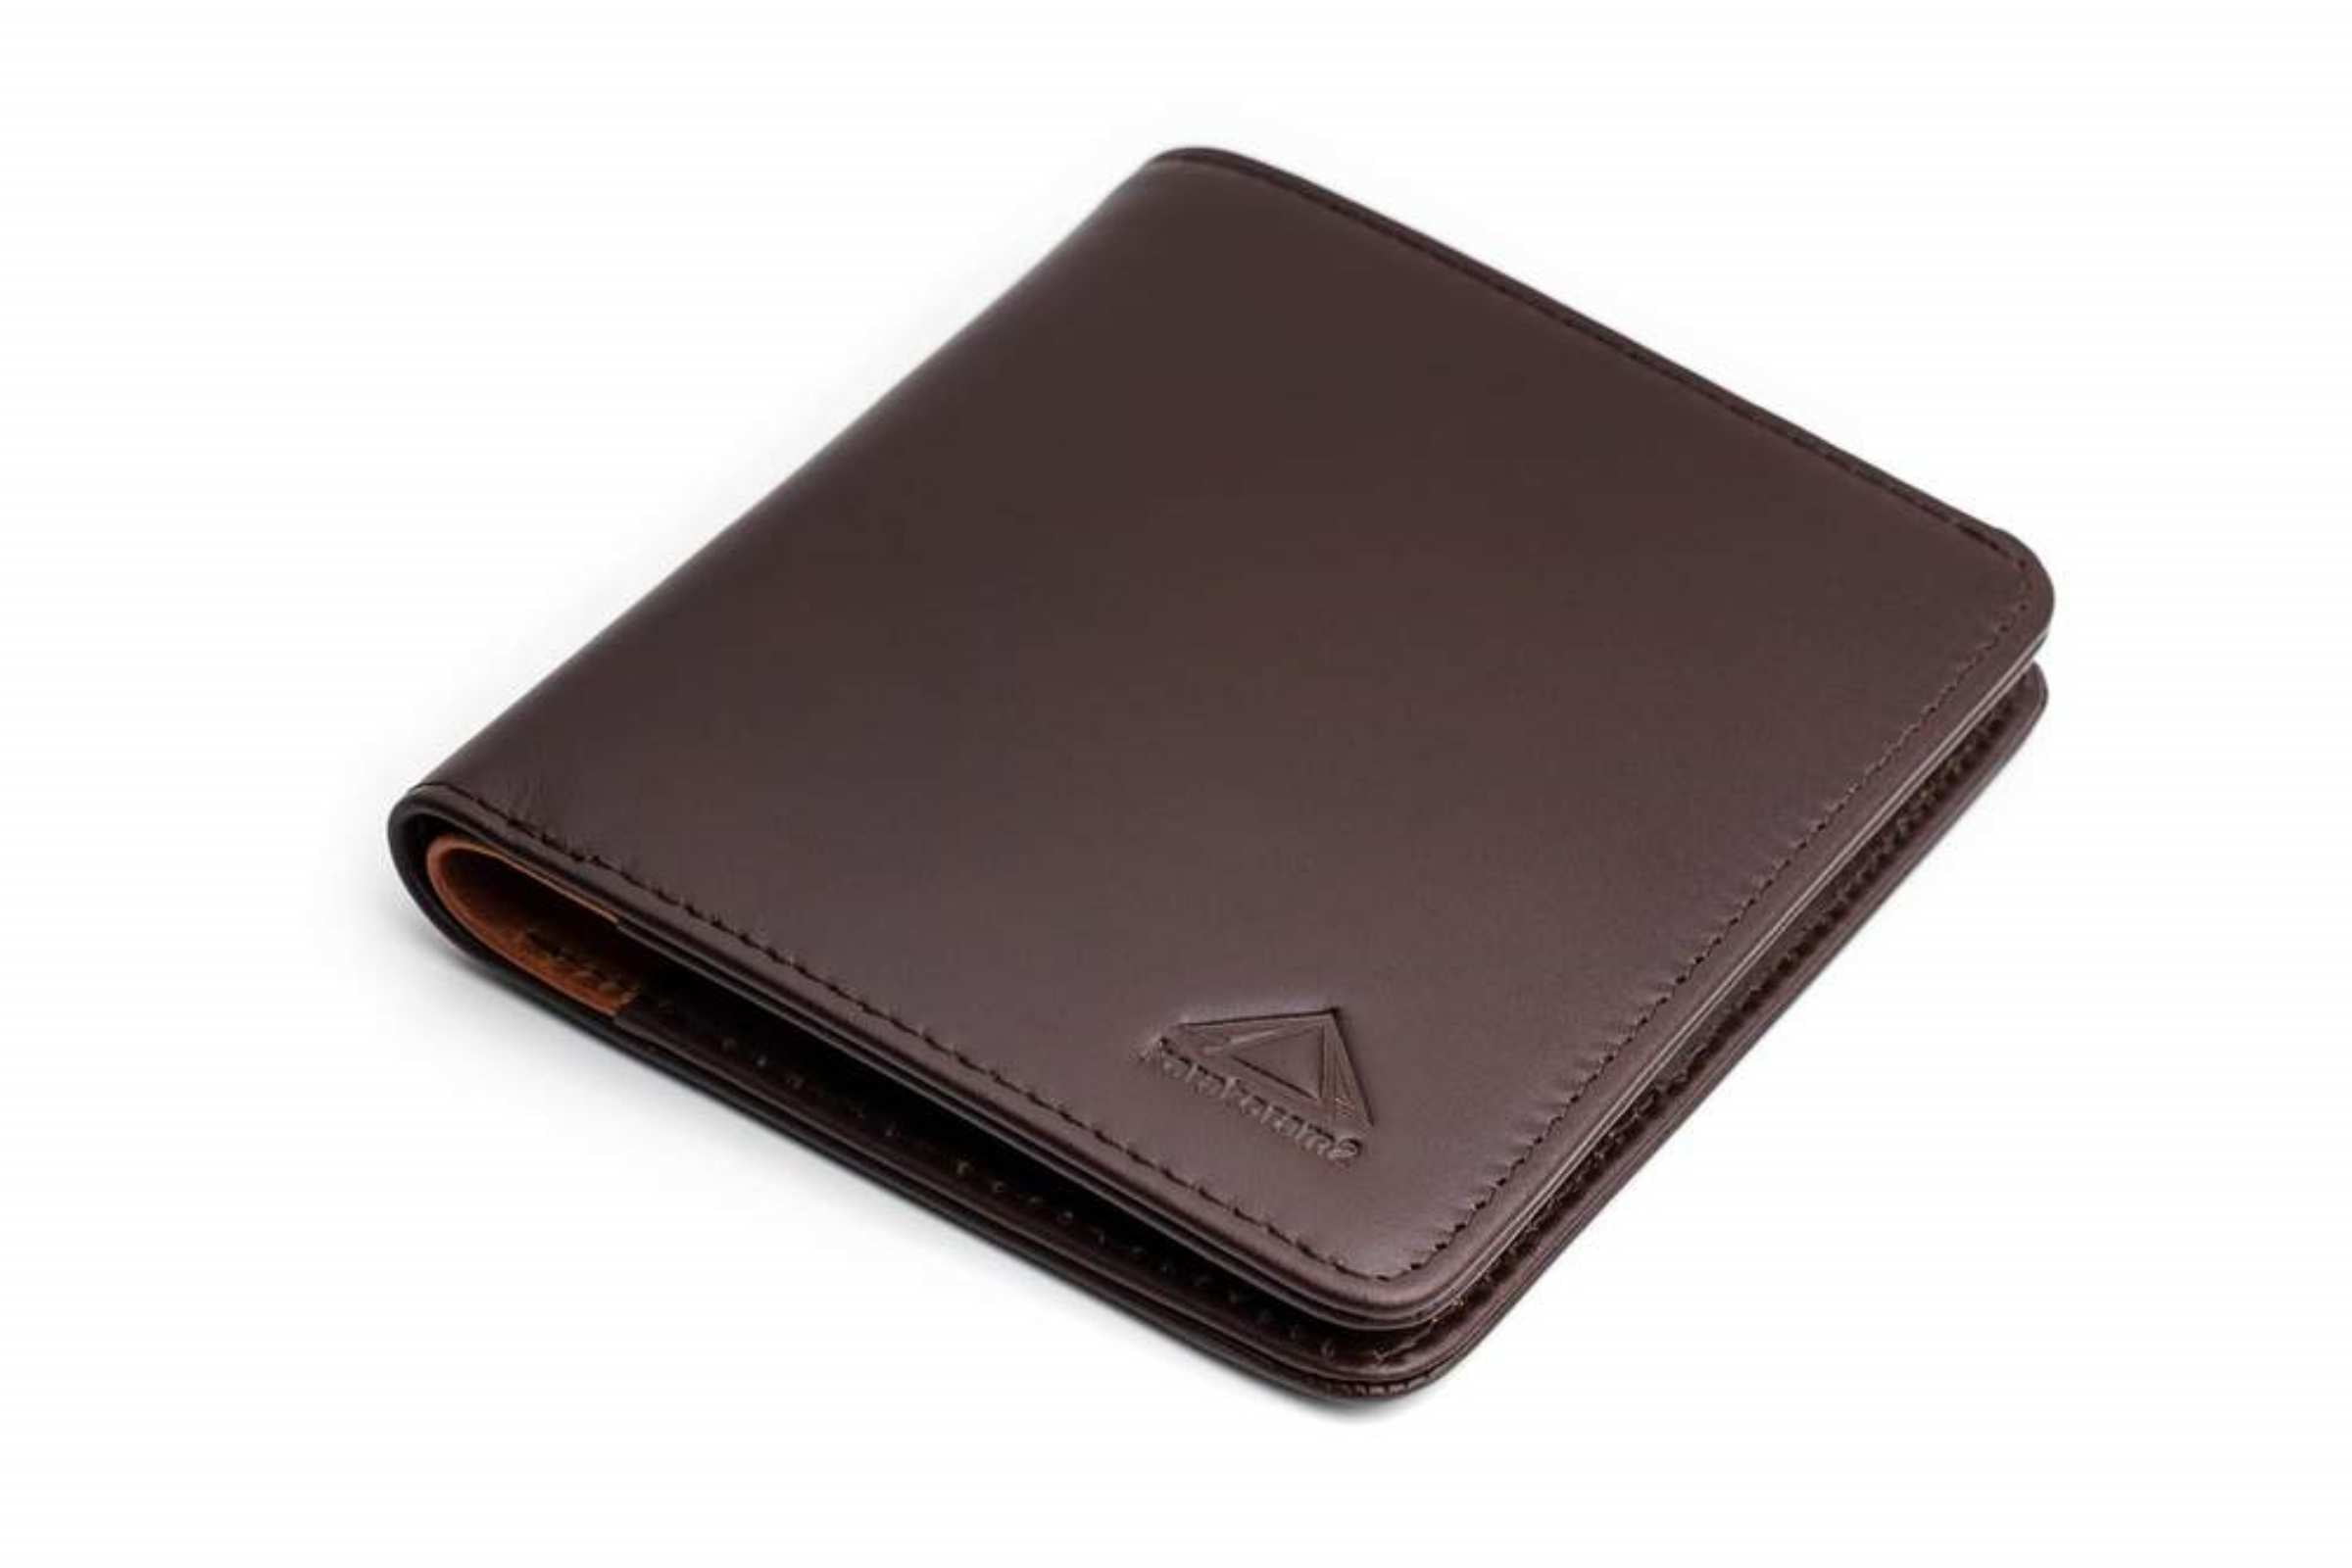 karakoram2 Sublime mens bifold leather wallet pulltab tan RFID protected Australia 2